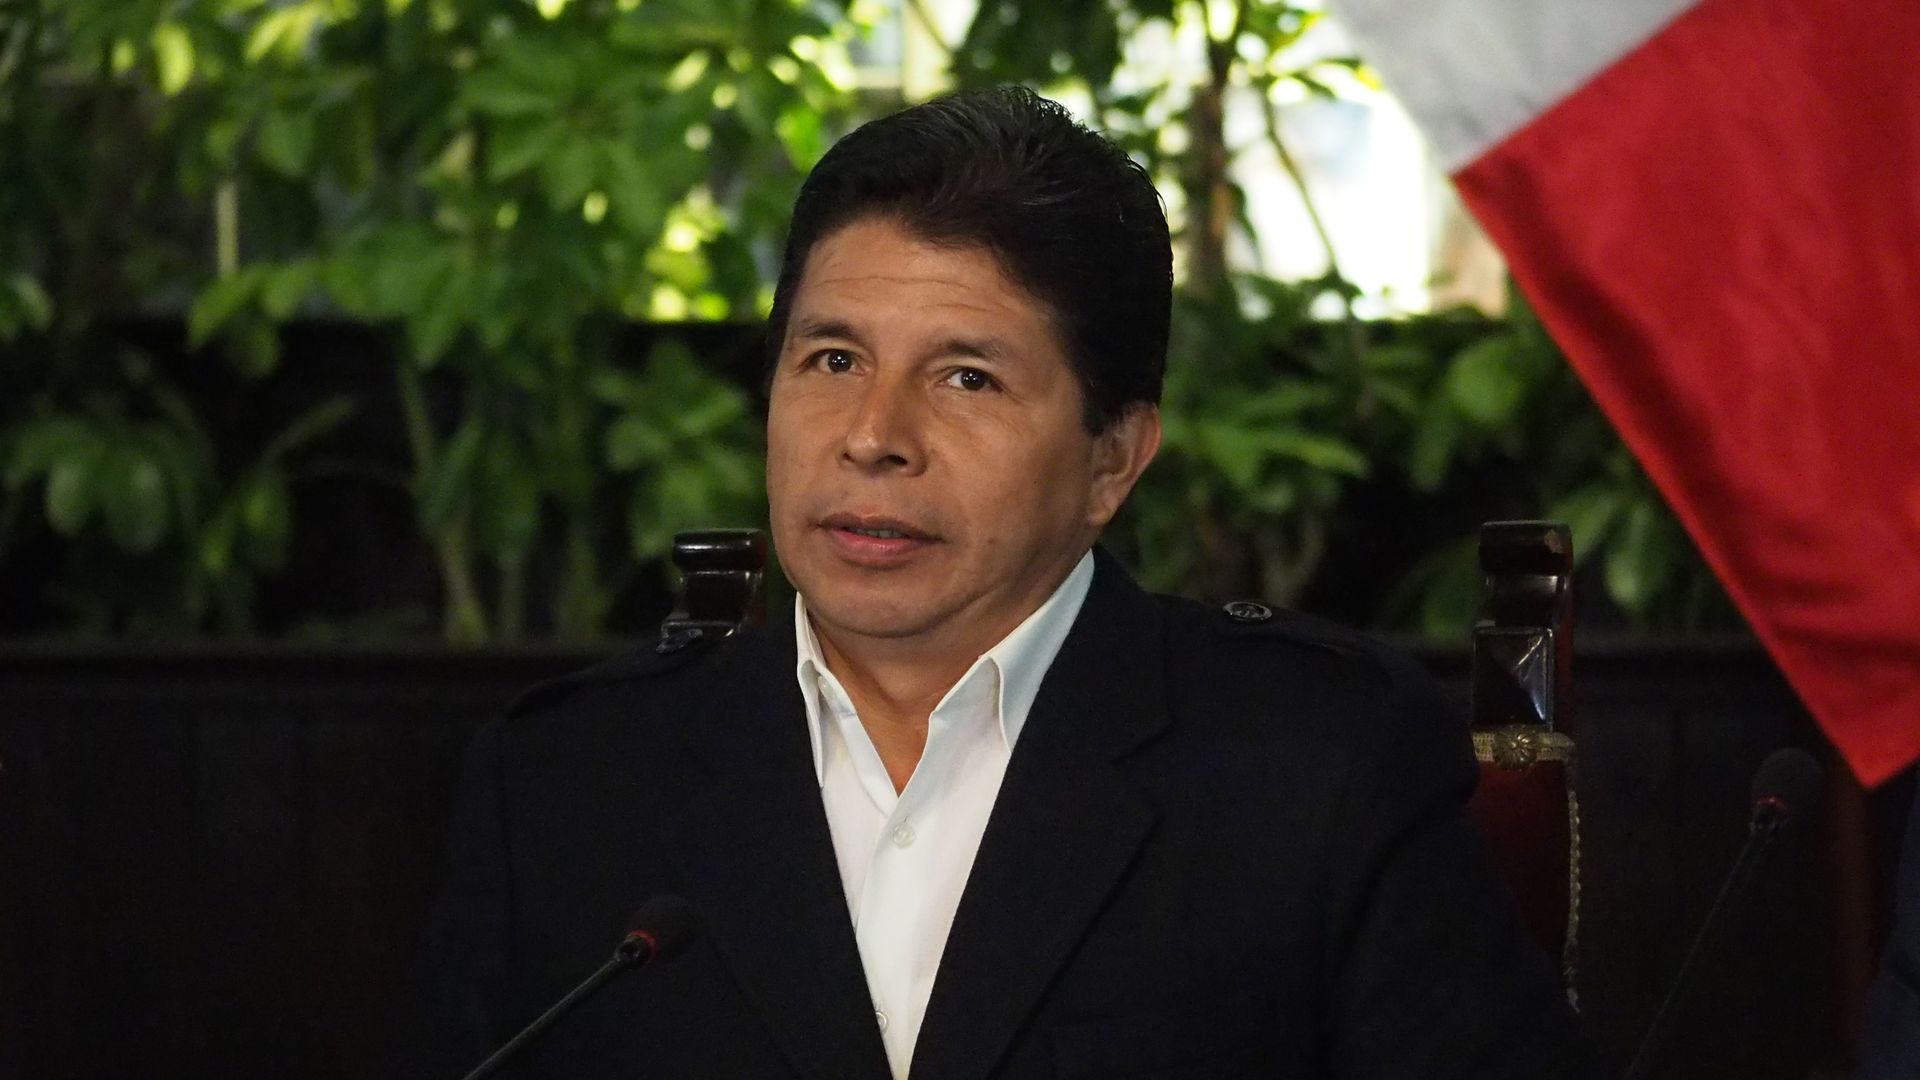 President Pedro Castillo